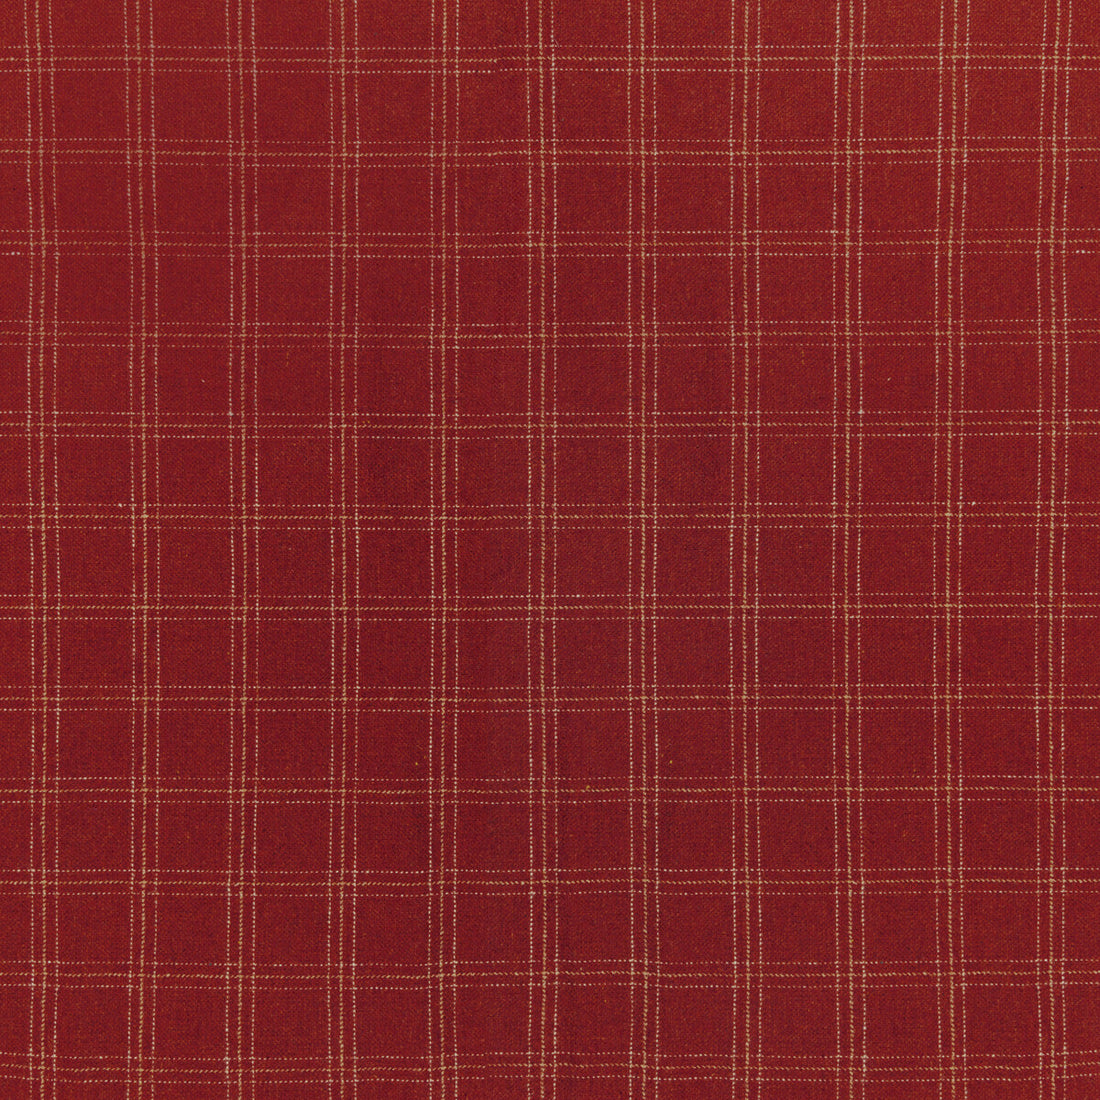 Kravet Design fabric in 36312-19 color - pattern 36312.19.0 - by Kravet Design